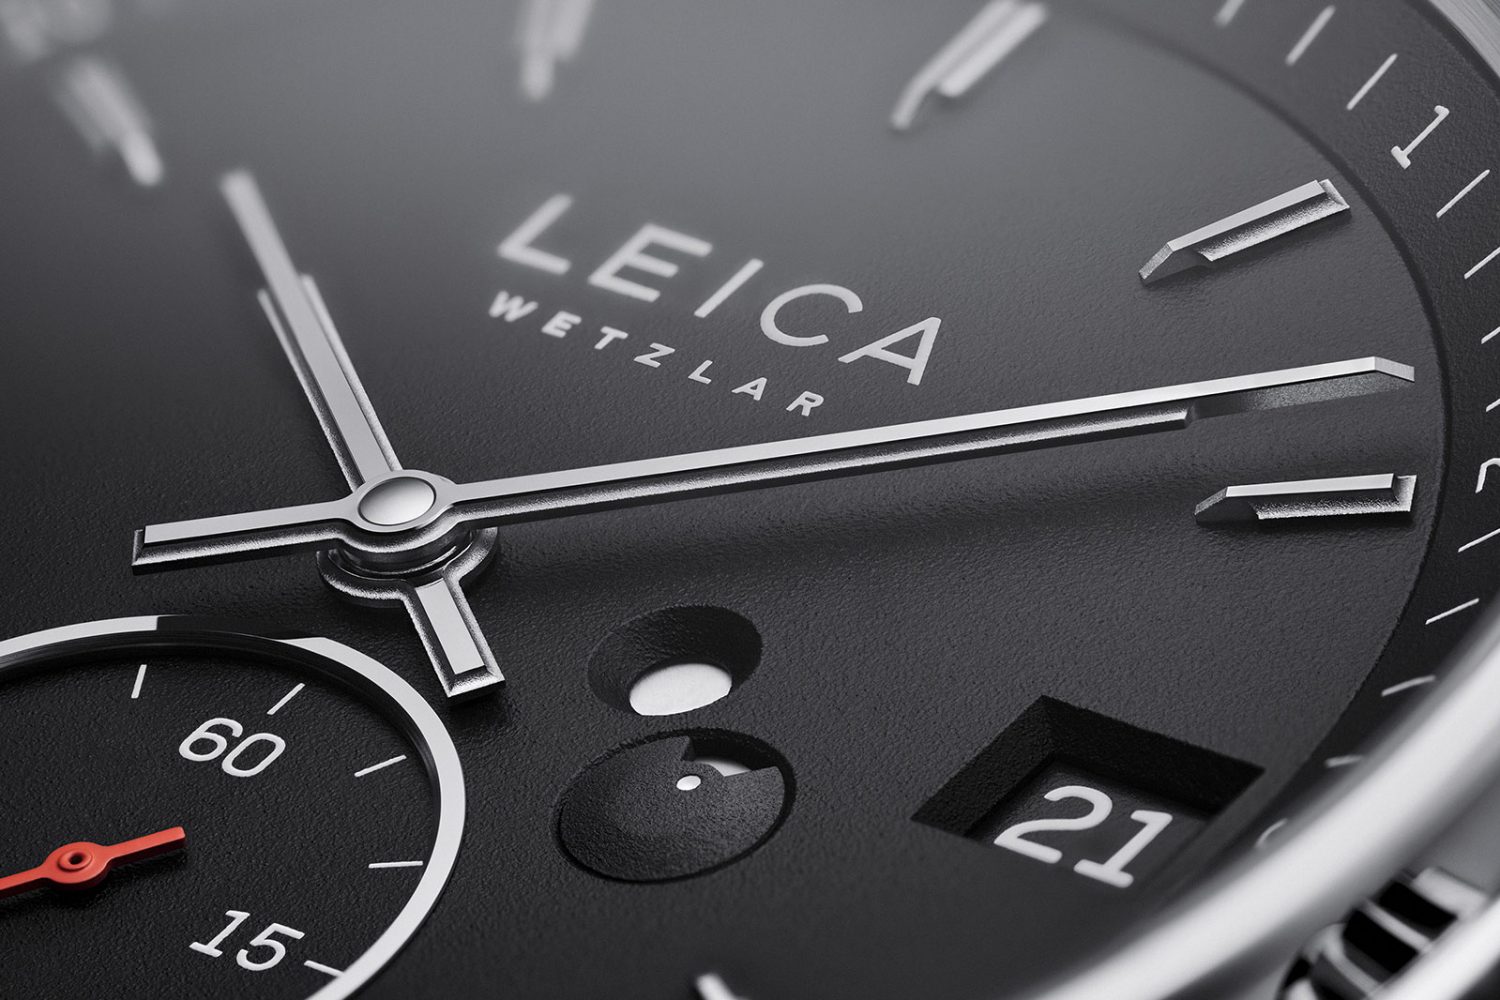 Đồng hồ Leica L1 và L2 chính thức ra mắt với giá bán cực đắt, hơn cả máy ảnh M11